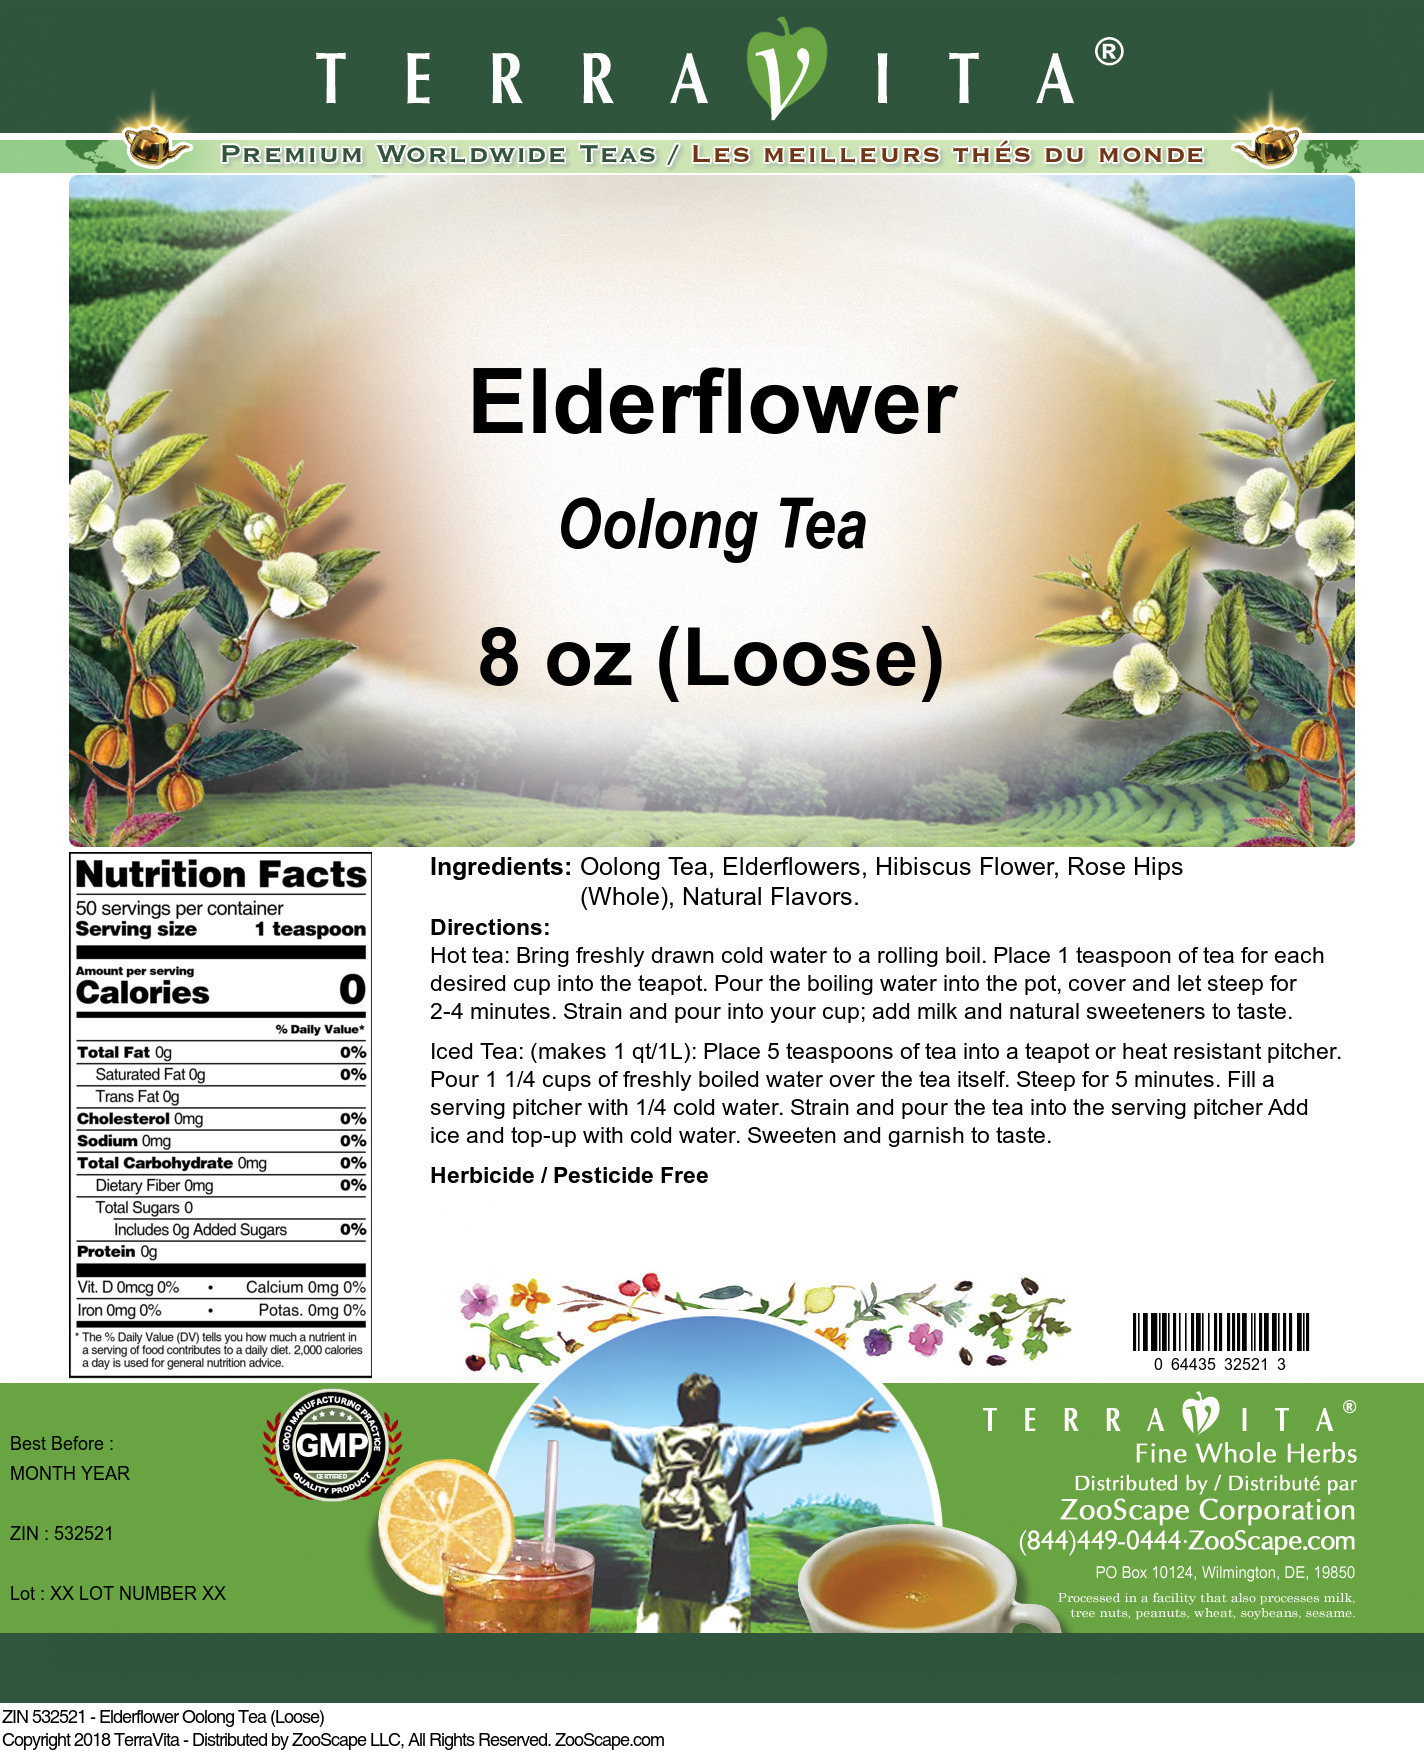 Elderflower Oolong Tea (Loose) - Label